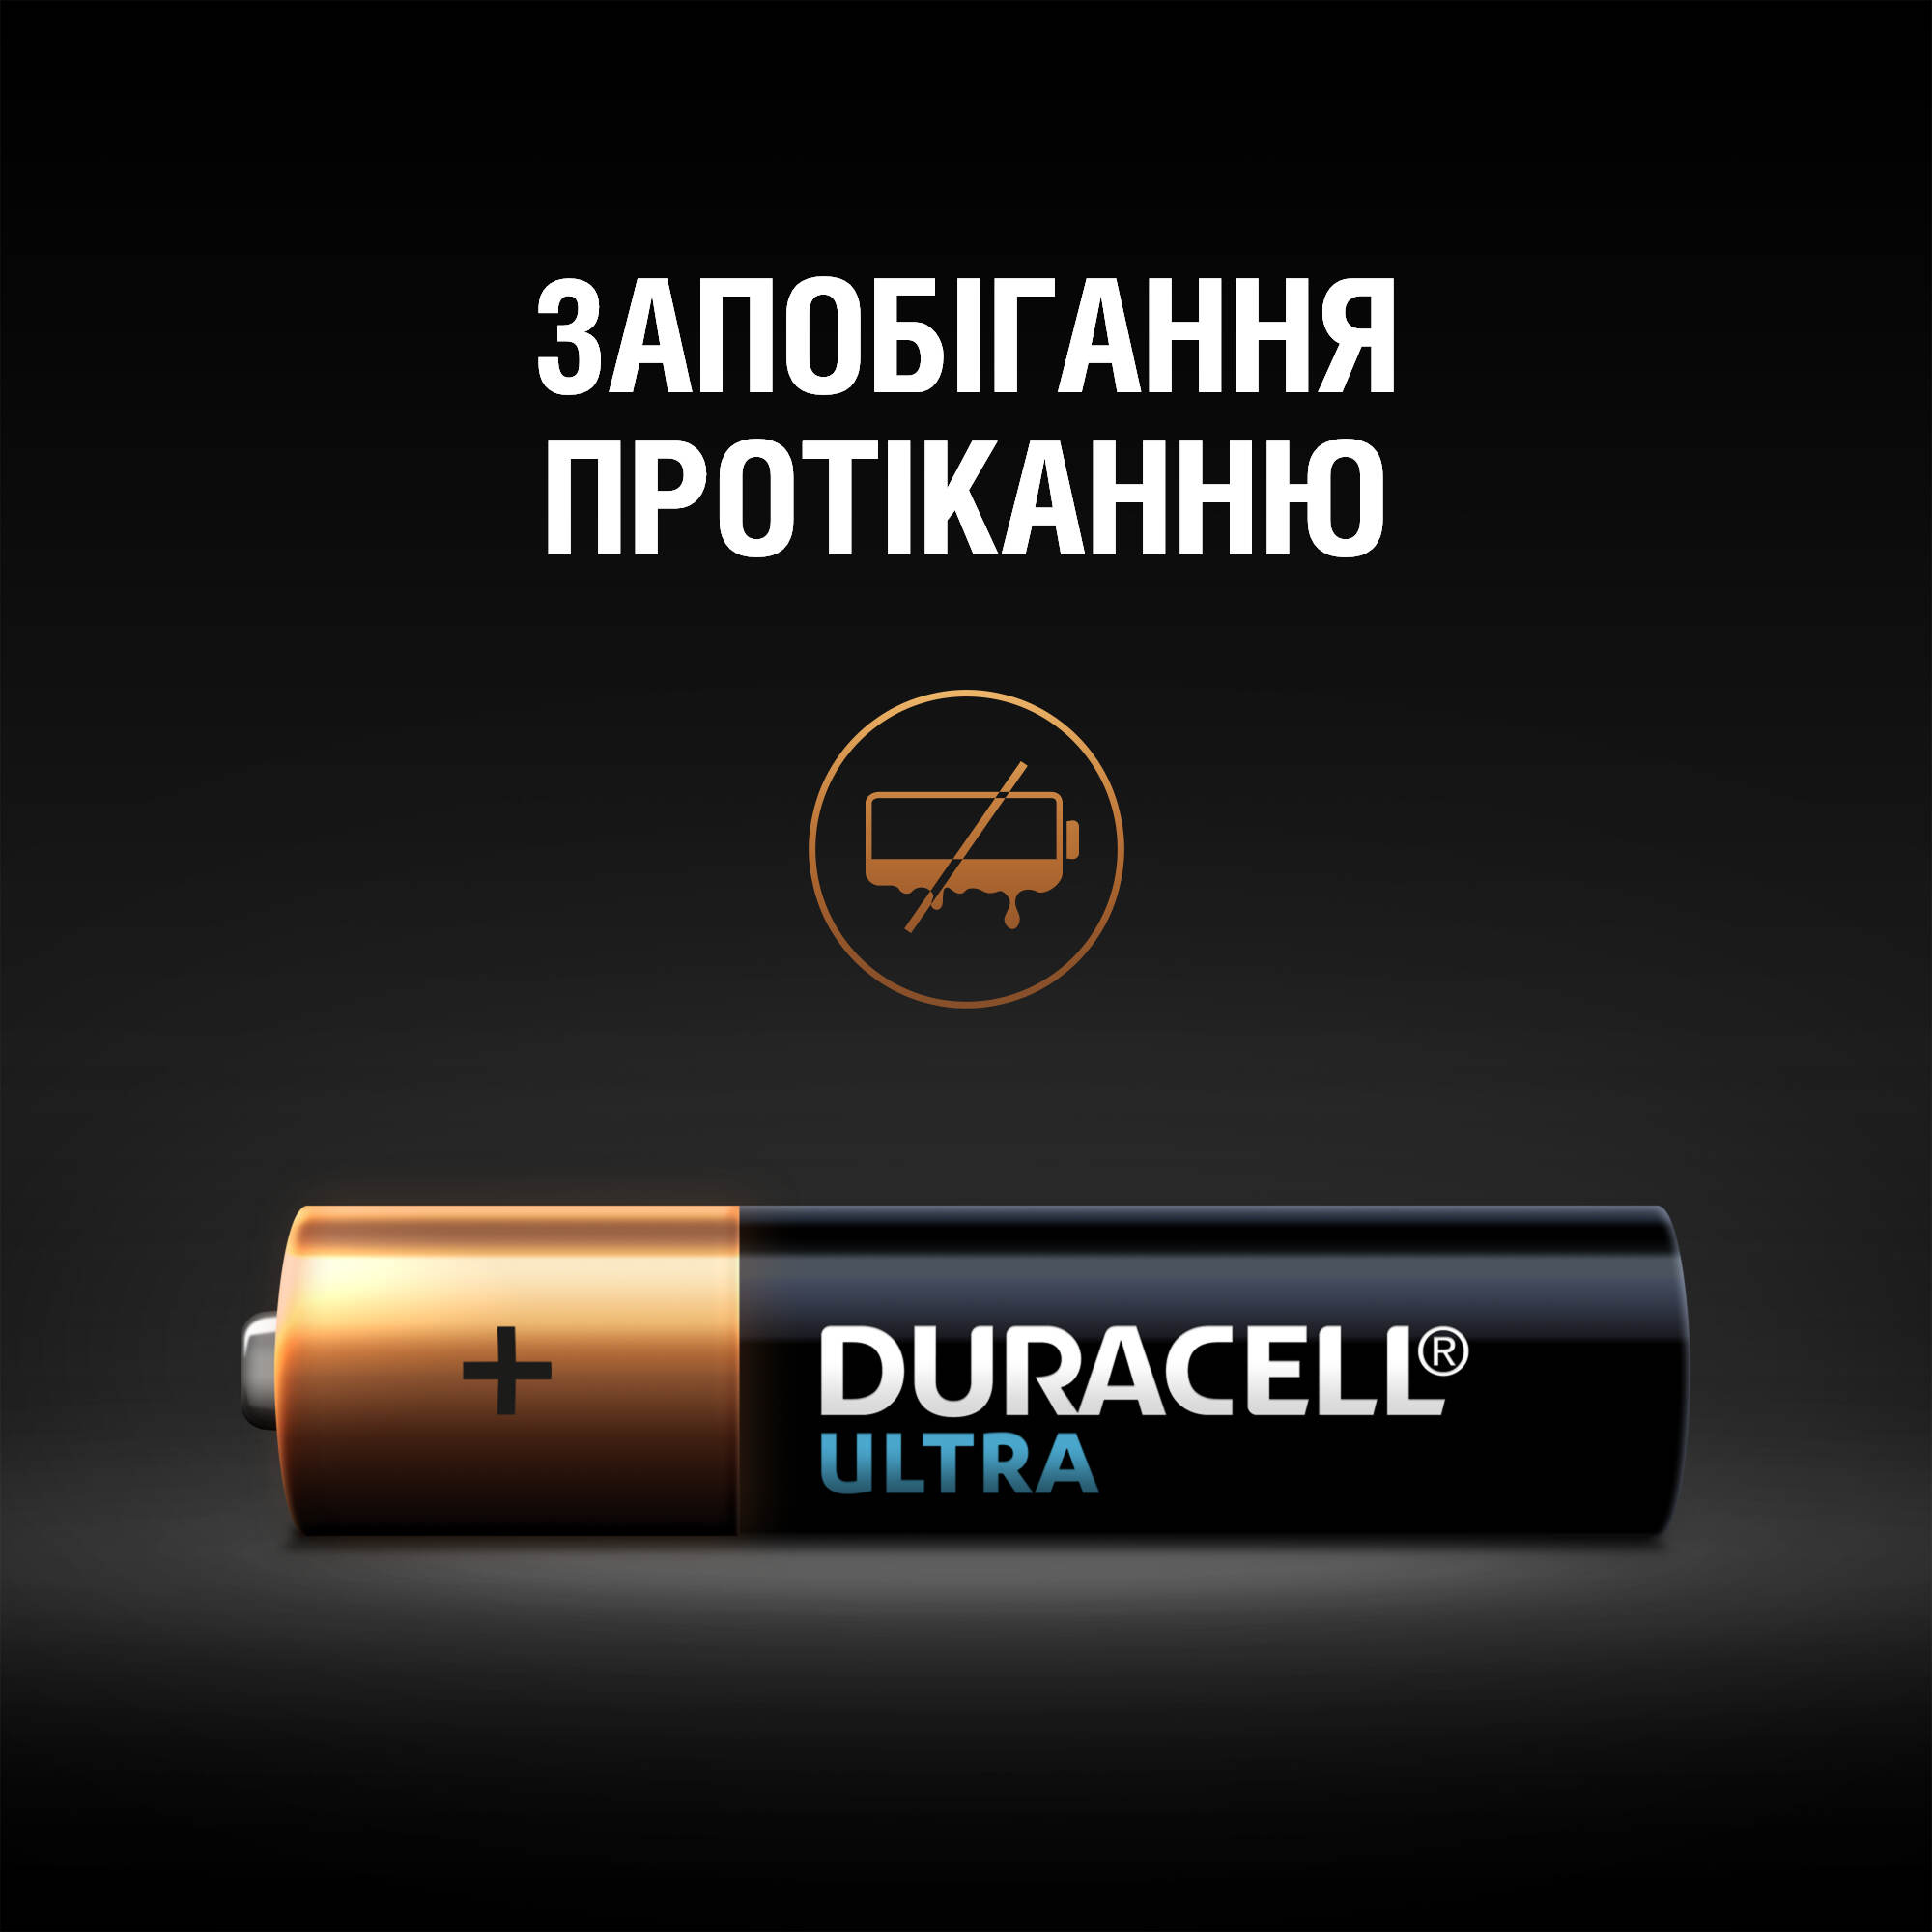 Щелочные батарейки мизинчиковые Duracell Ultra 1,5 V AAA LR03/MX2400, 4 шт. (5004806) - фото 5